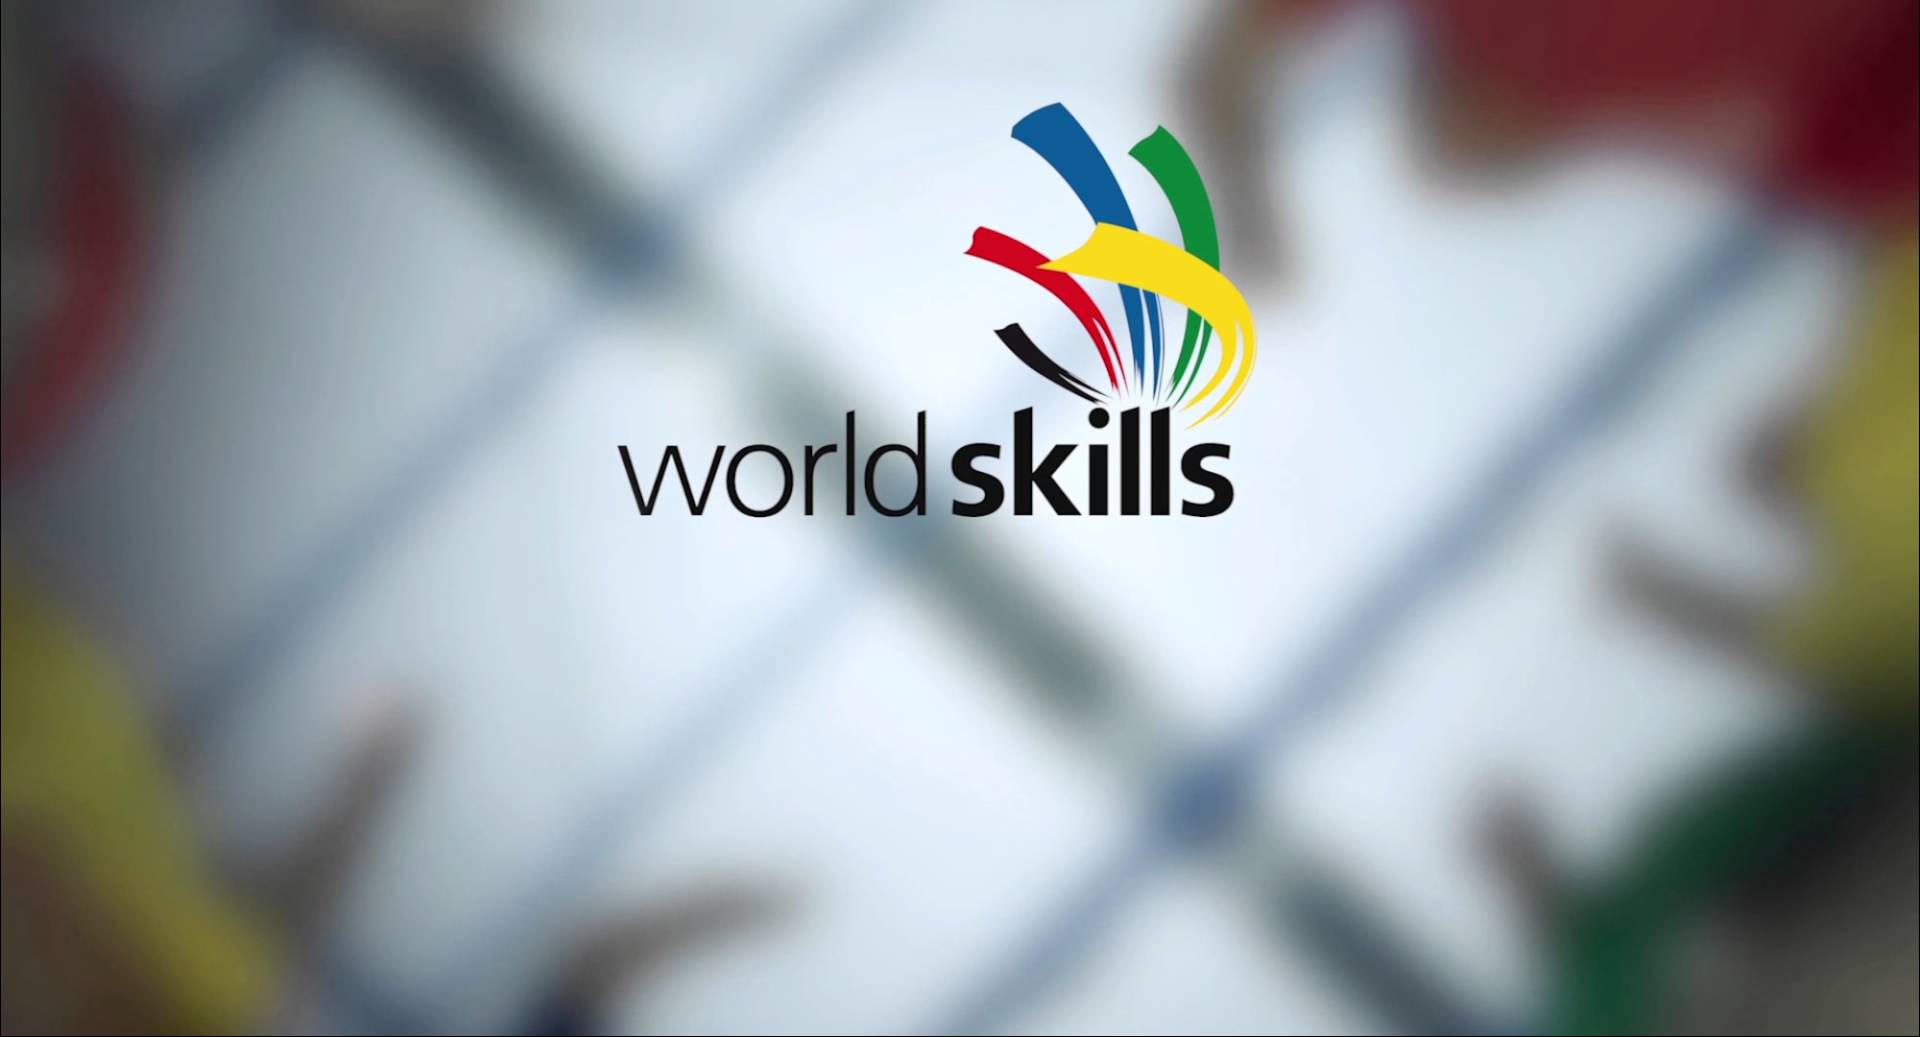 В Ивановском колледже легкой промышленности проходит конкурс WorldSkills по компетенции технология моды